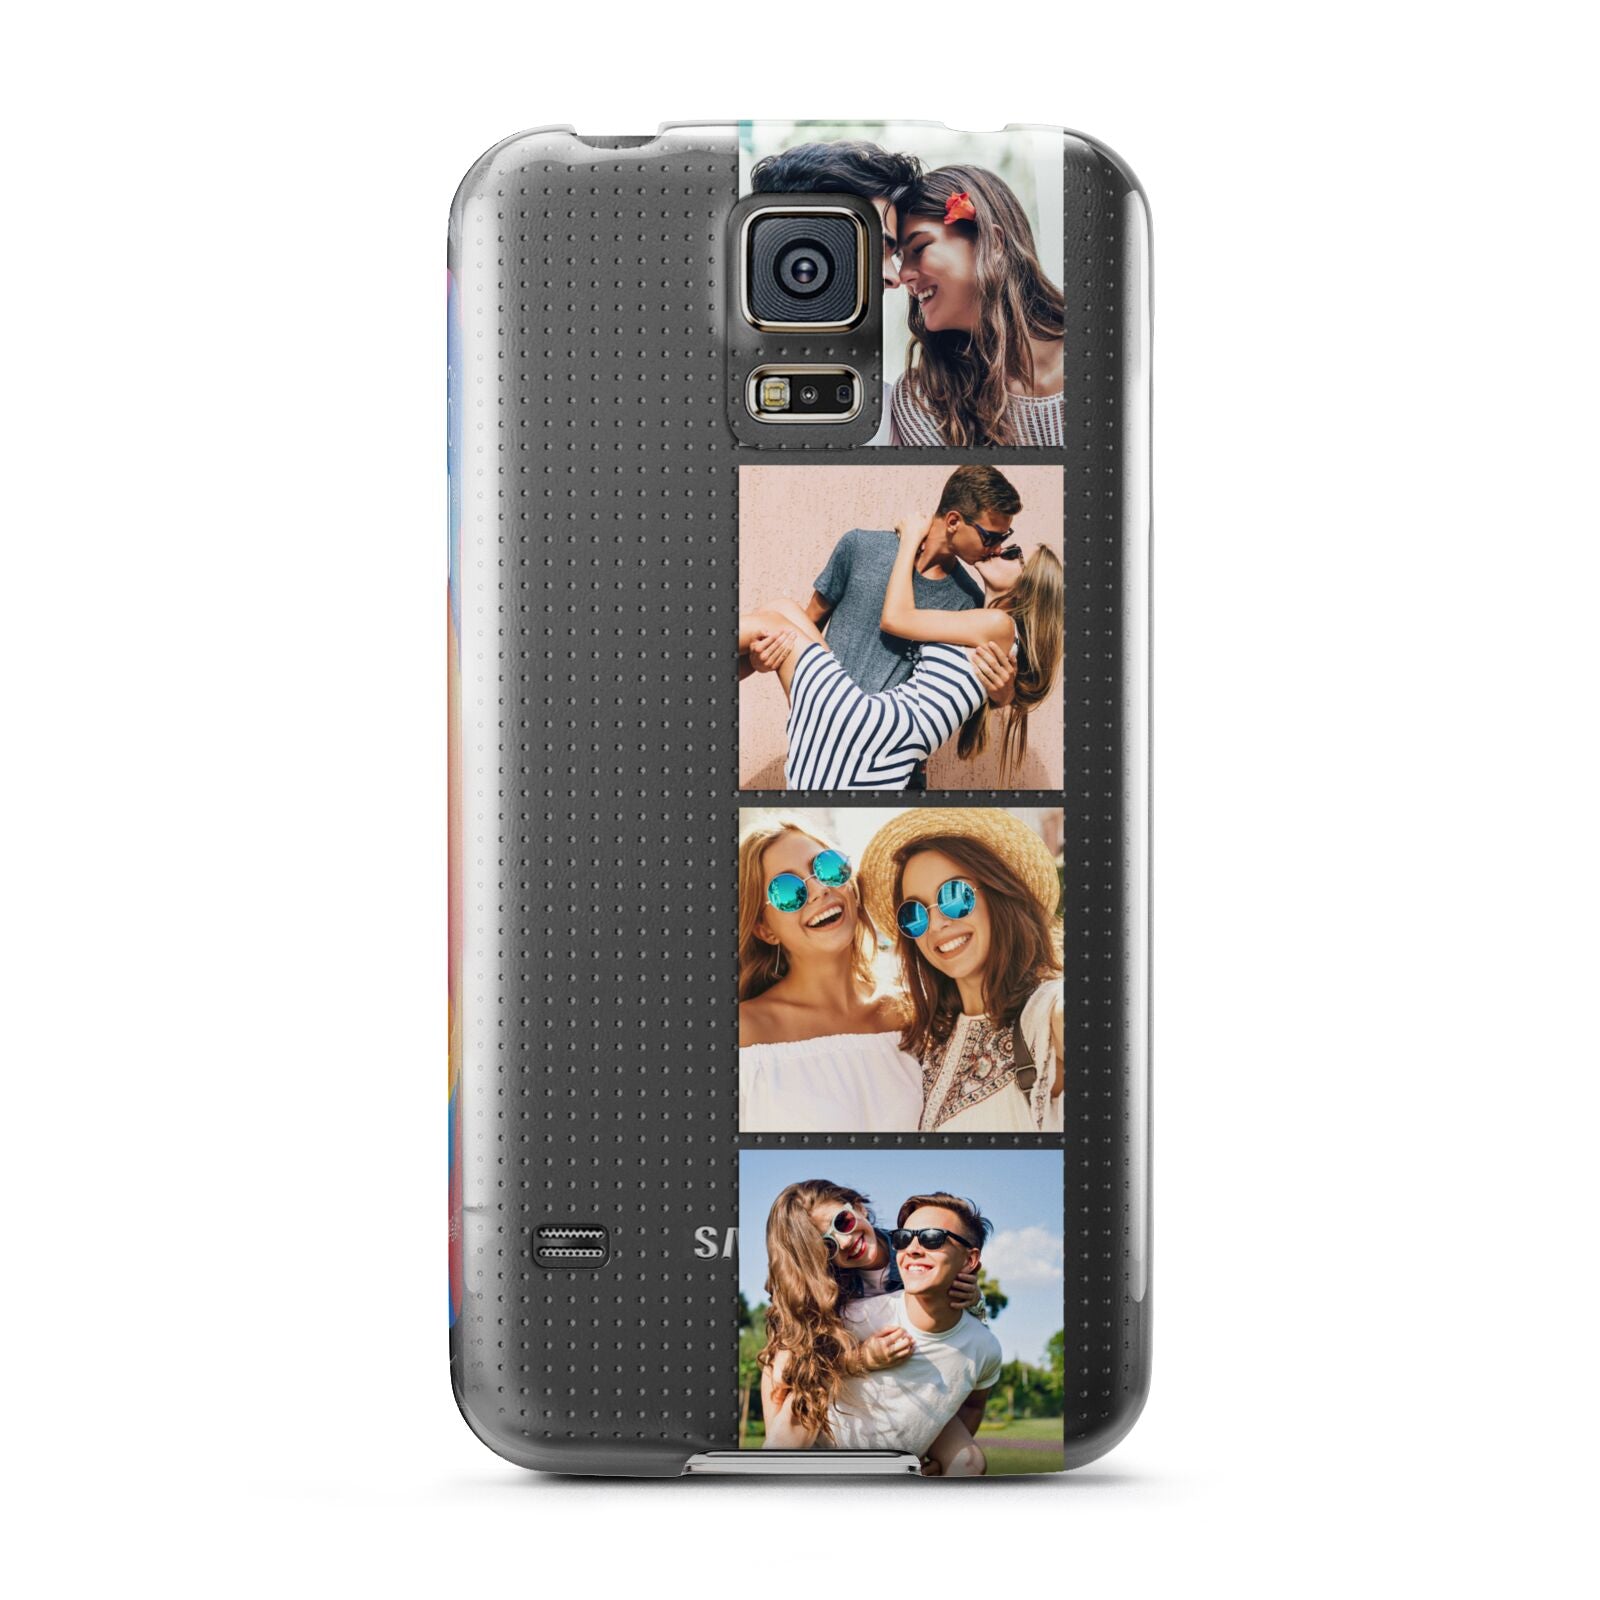 Photo Strip Montage Upload Samsung Galaxy S5 Case